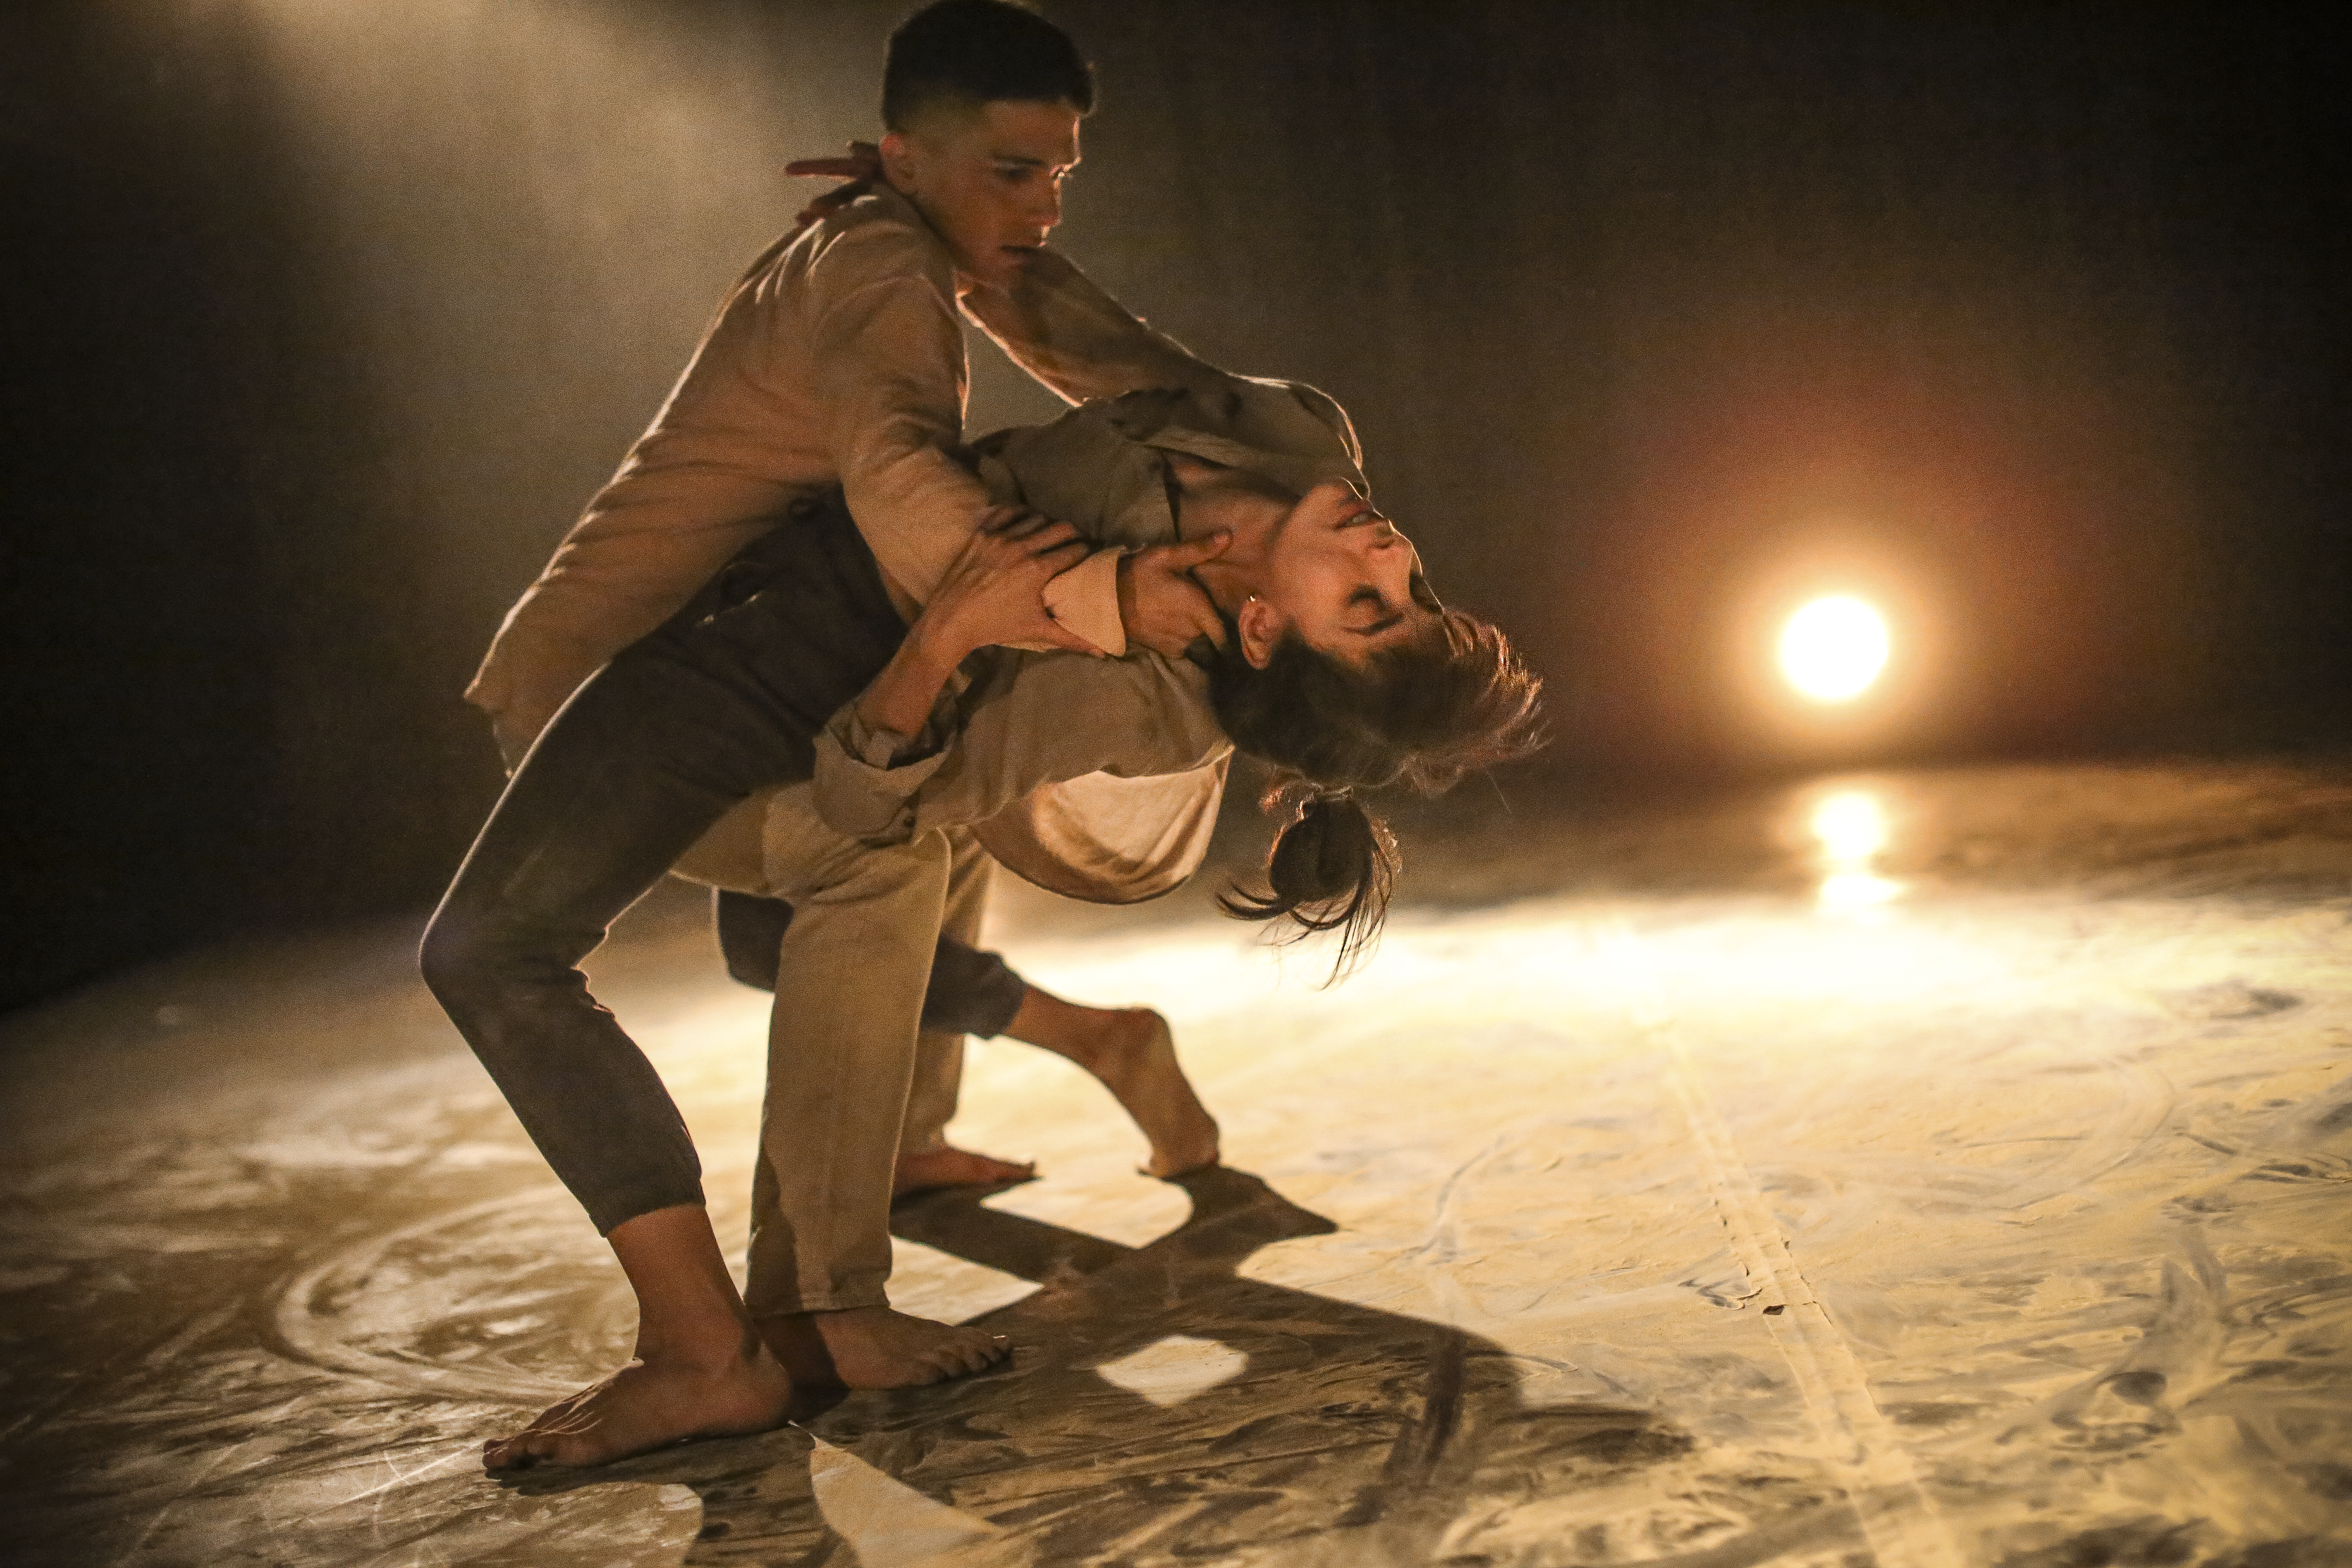 En manada vamos: Jauría,  la nueva pieza dancística del colombiano Vladimir Rodríguez